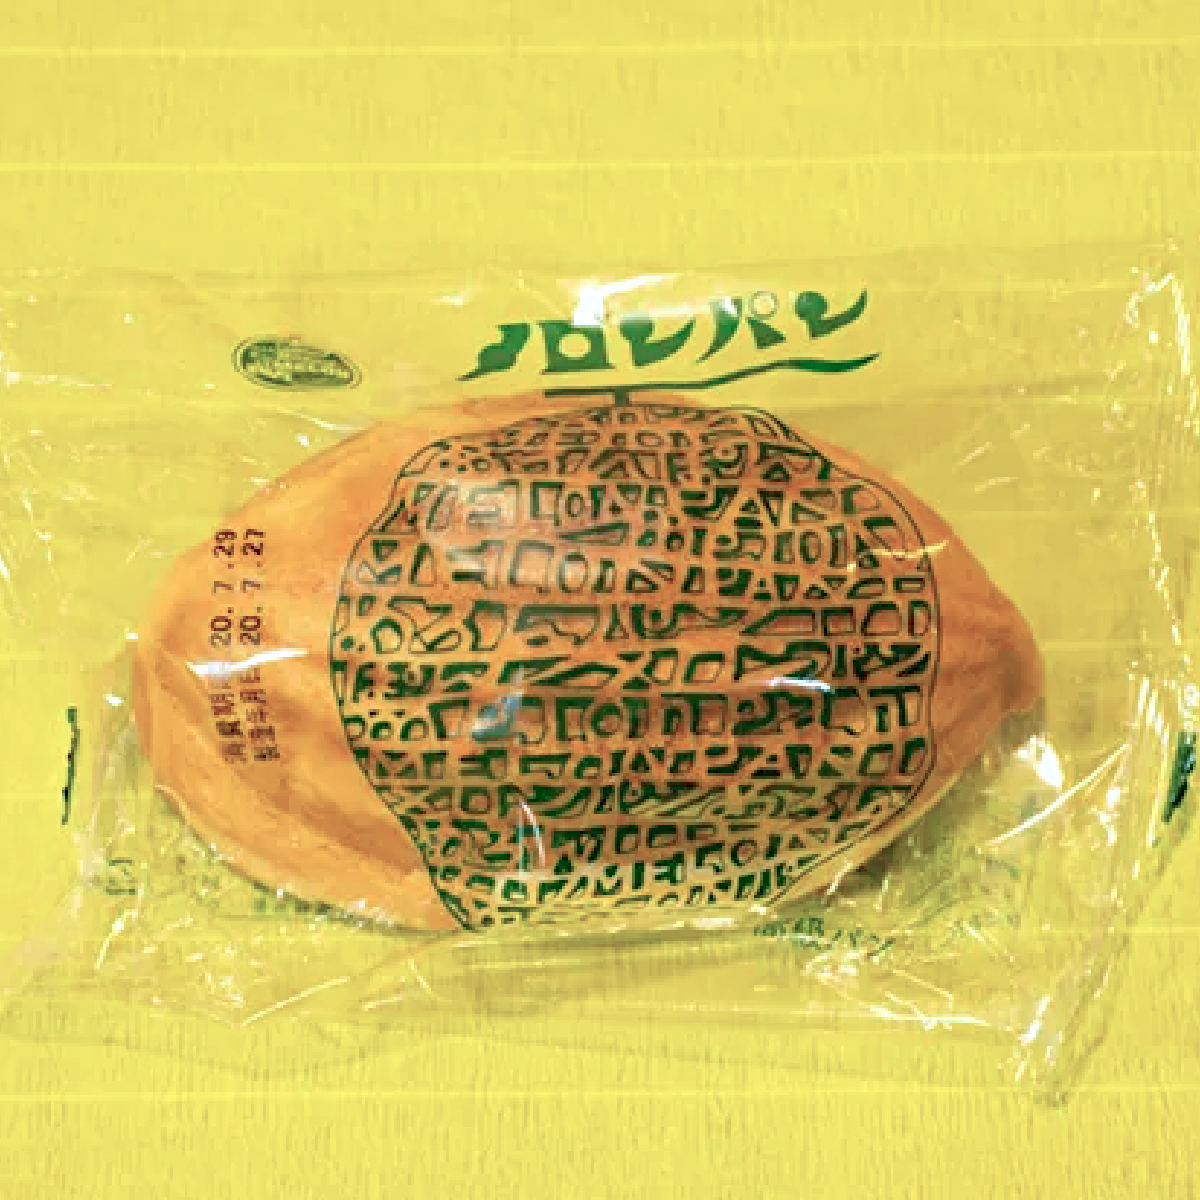 【広島】のメロンパンはラグビー型が当たり前って本当!?【ご当地グルメ探偵M】